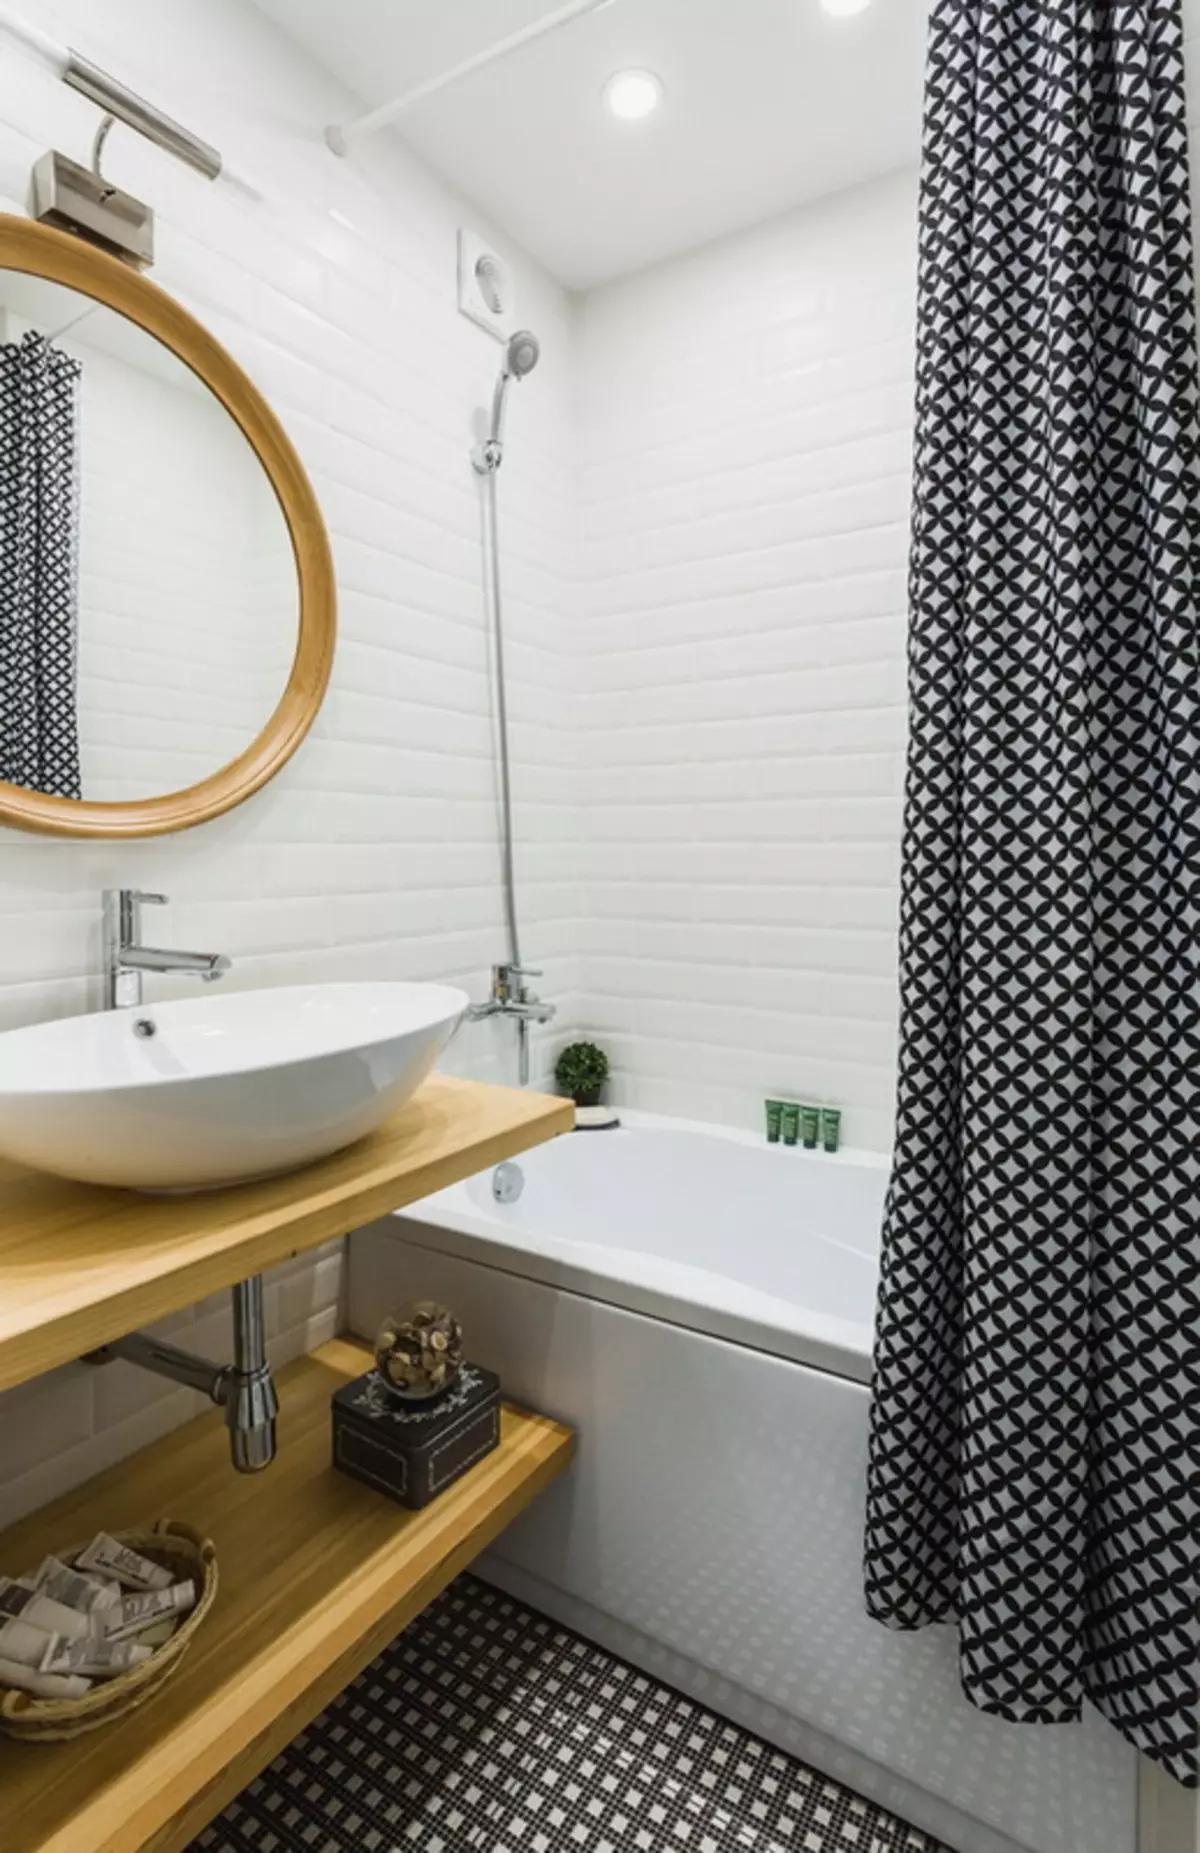 Badezimmer im skandinavischen Stil (66 Fotos): Innenarchitektur von einem kleinen Raum 3 und 4 Quadratmetern. M, die Ideen des Designs eines weißen Badezimmers, der Wahl des Zubehörs 21439_65